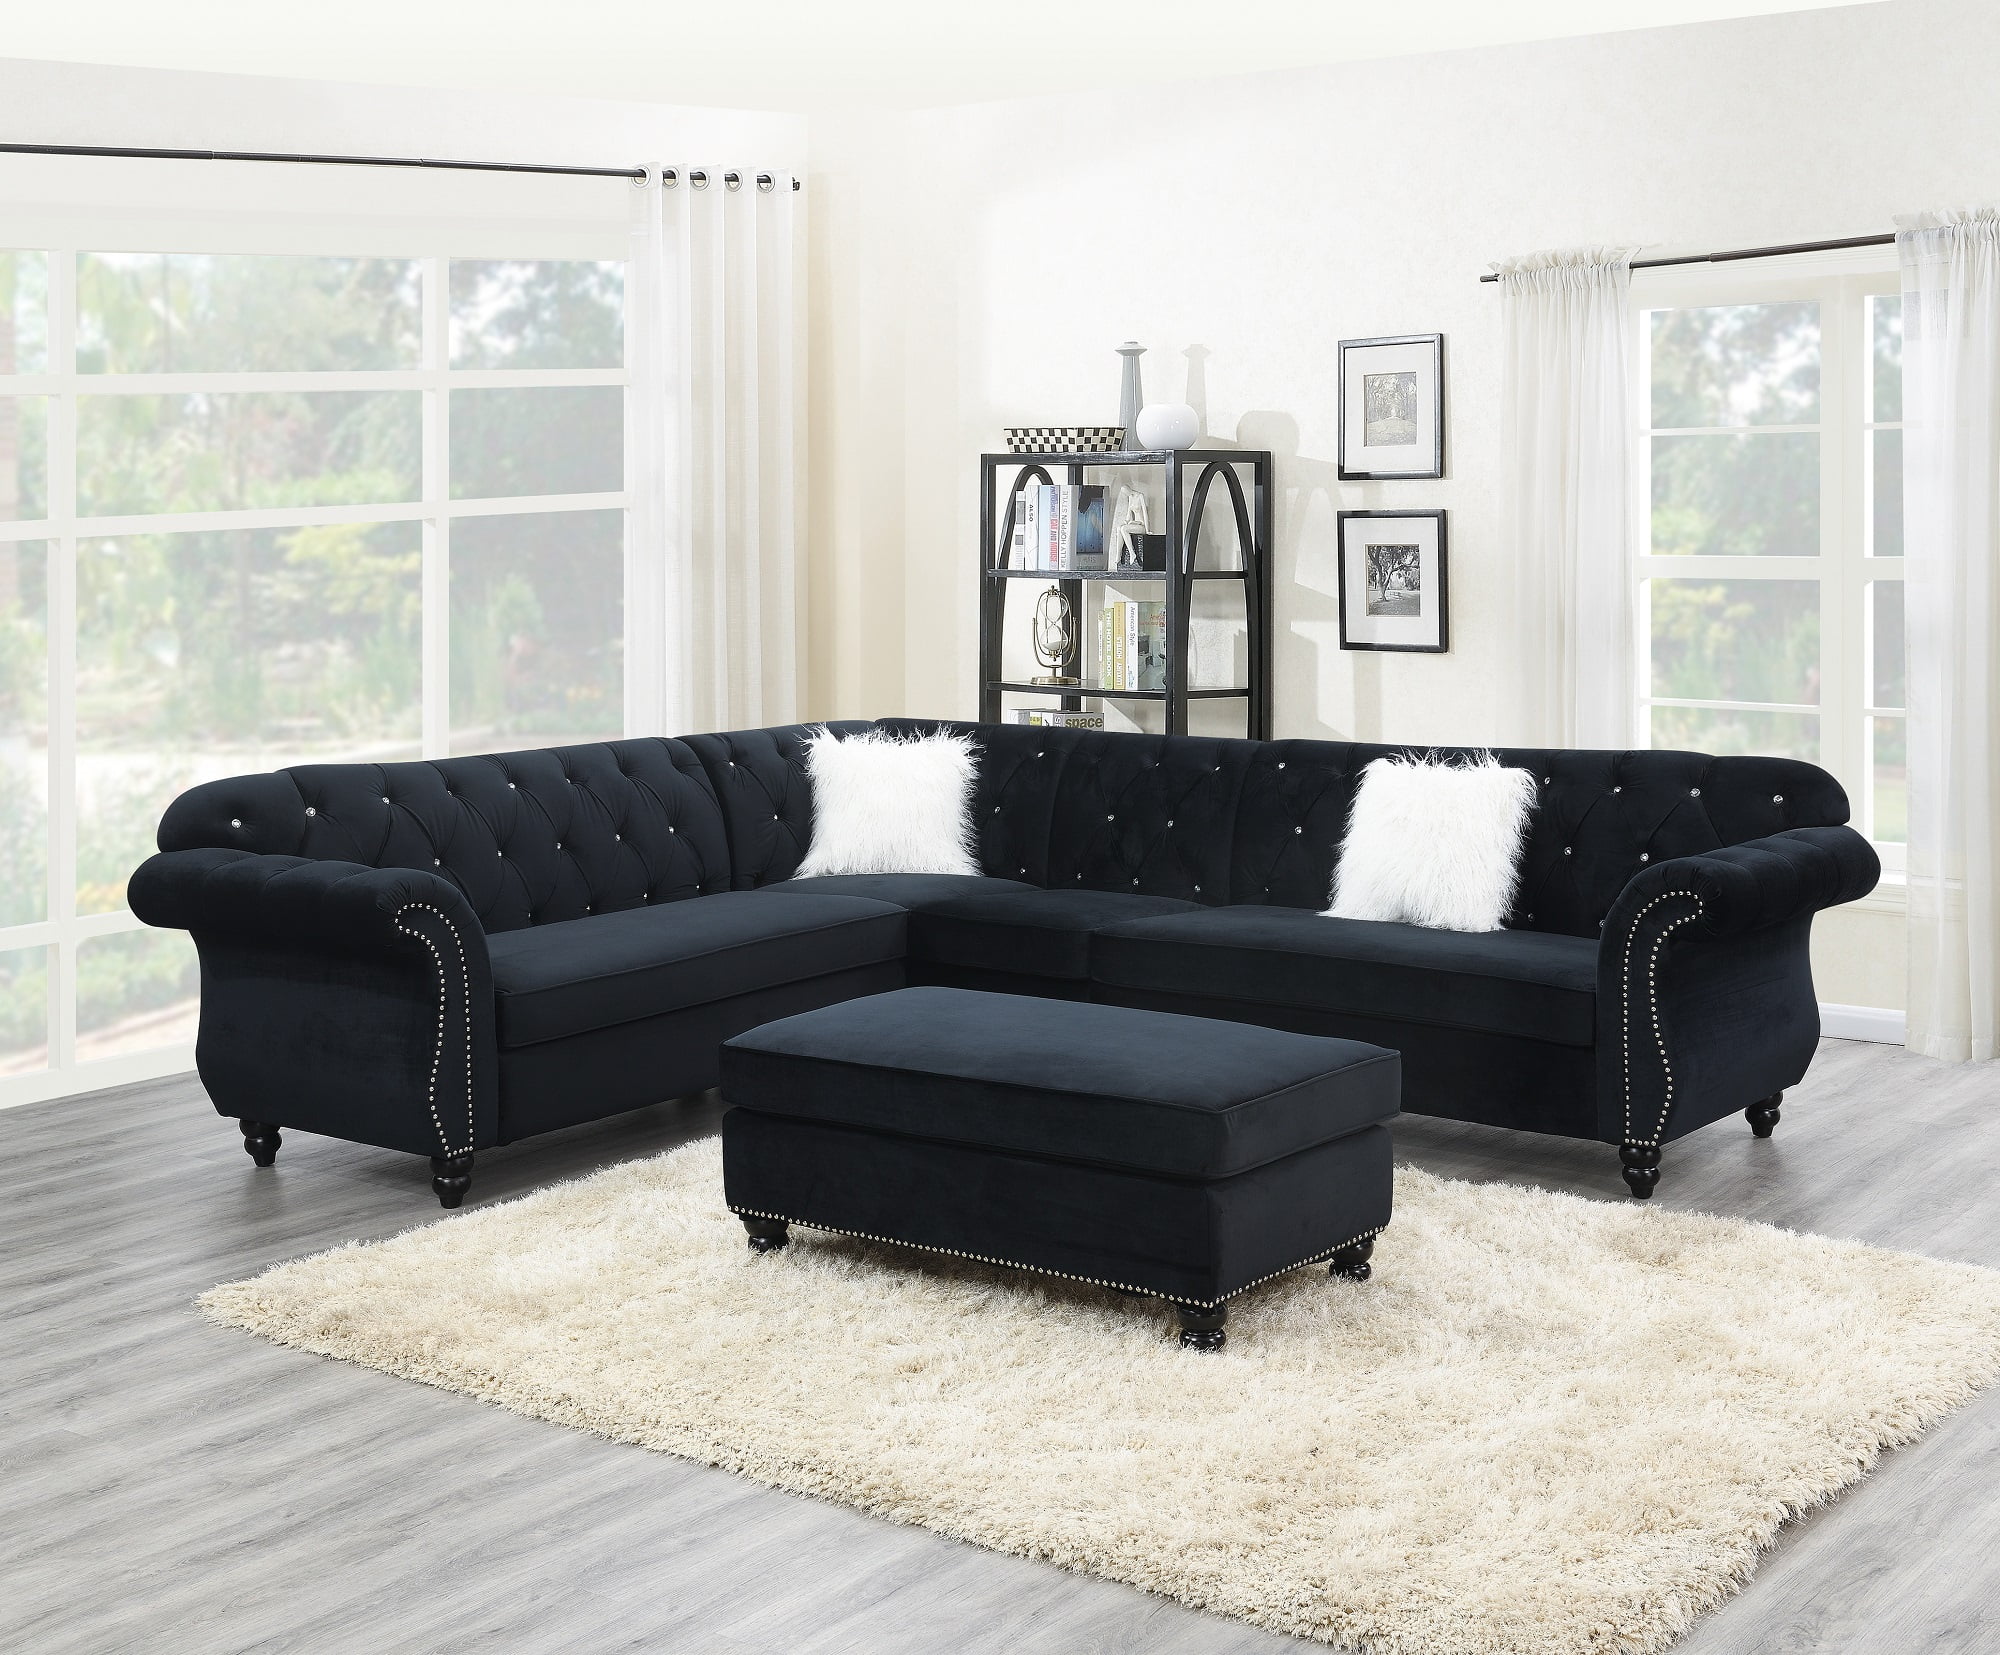 Contemporary Modern Living Room Sectional Sofa Set Black